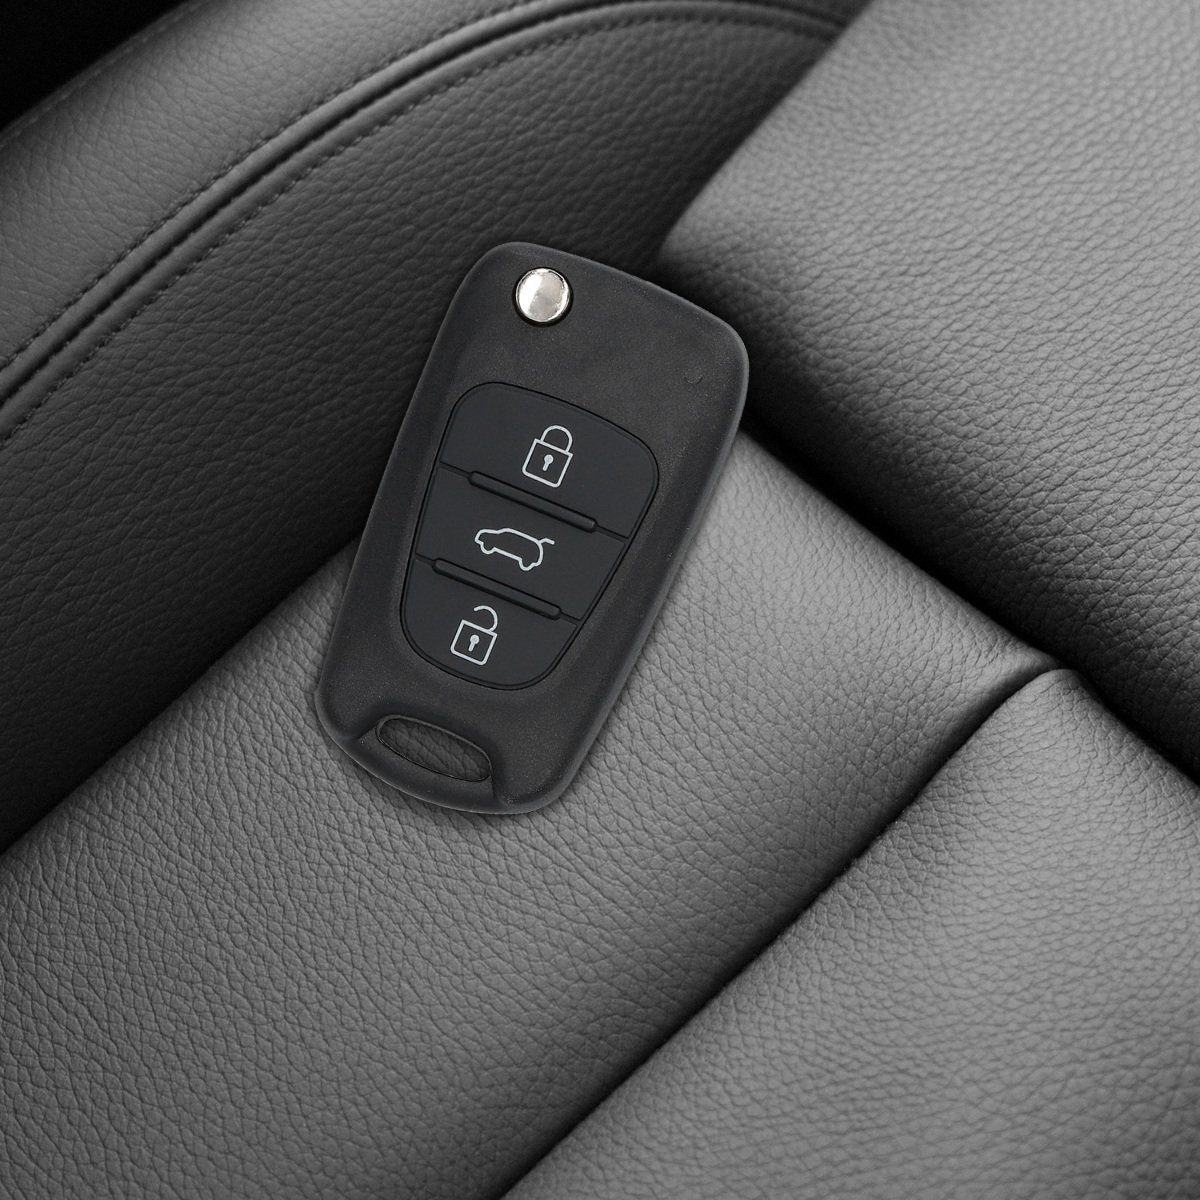 kwmobile Schlüsseltasche Transponder Elektronik - Autoschlüssel, Batterien für ohne Hyundai Gehäuse Auto Schlüsselgehäuse